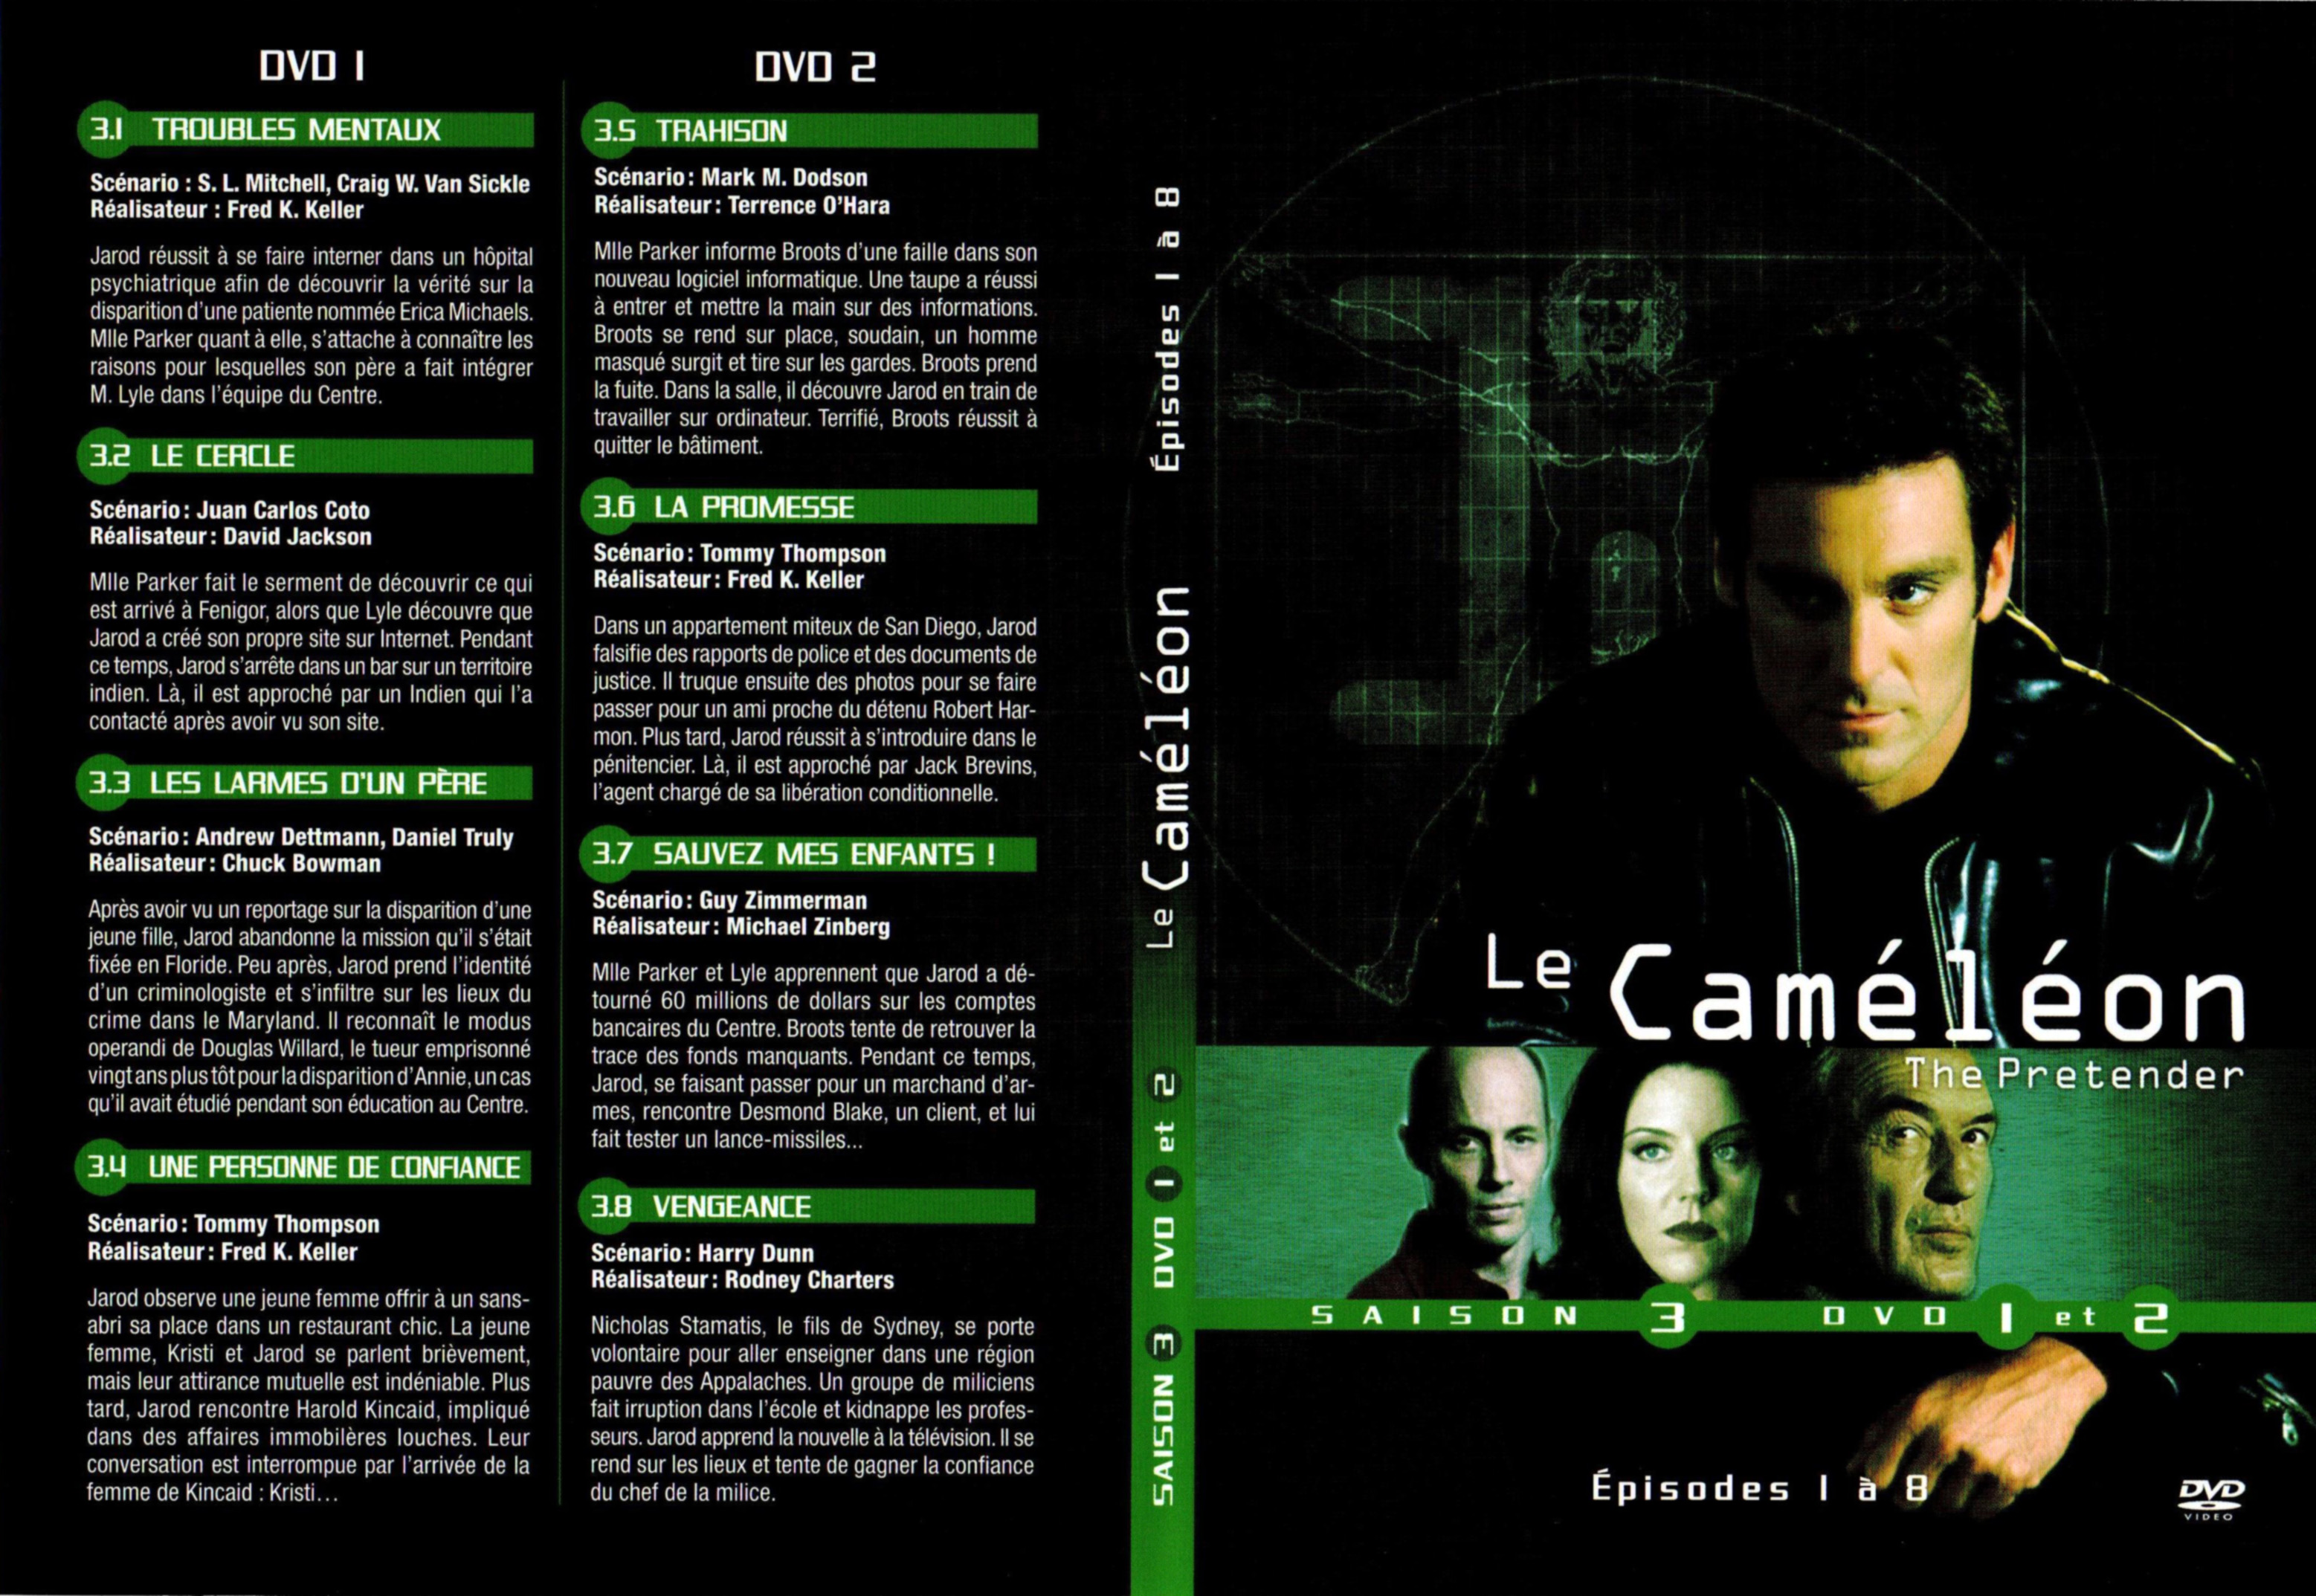 Jaquette DVD Le camlon Saison 3 DVD 1